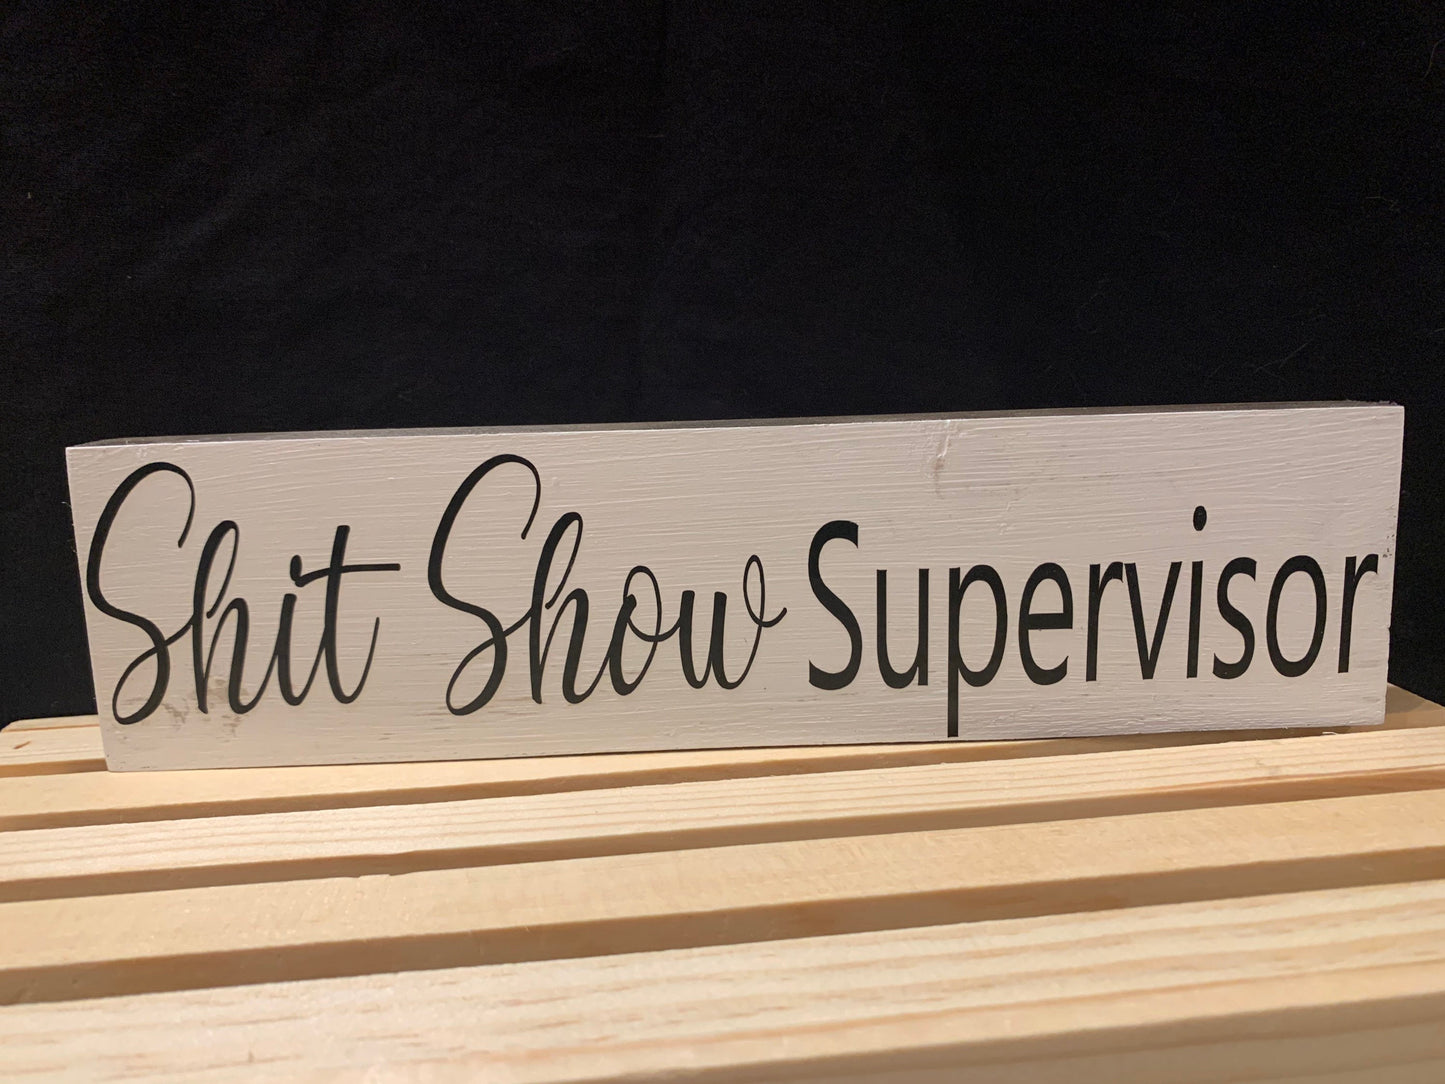 Shit Show Supervisor block